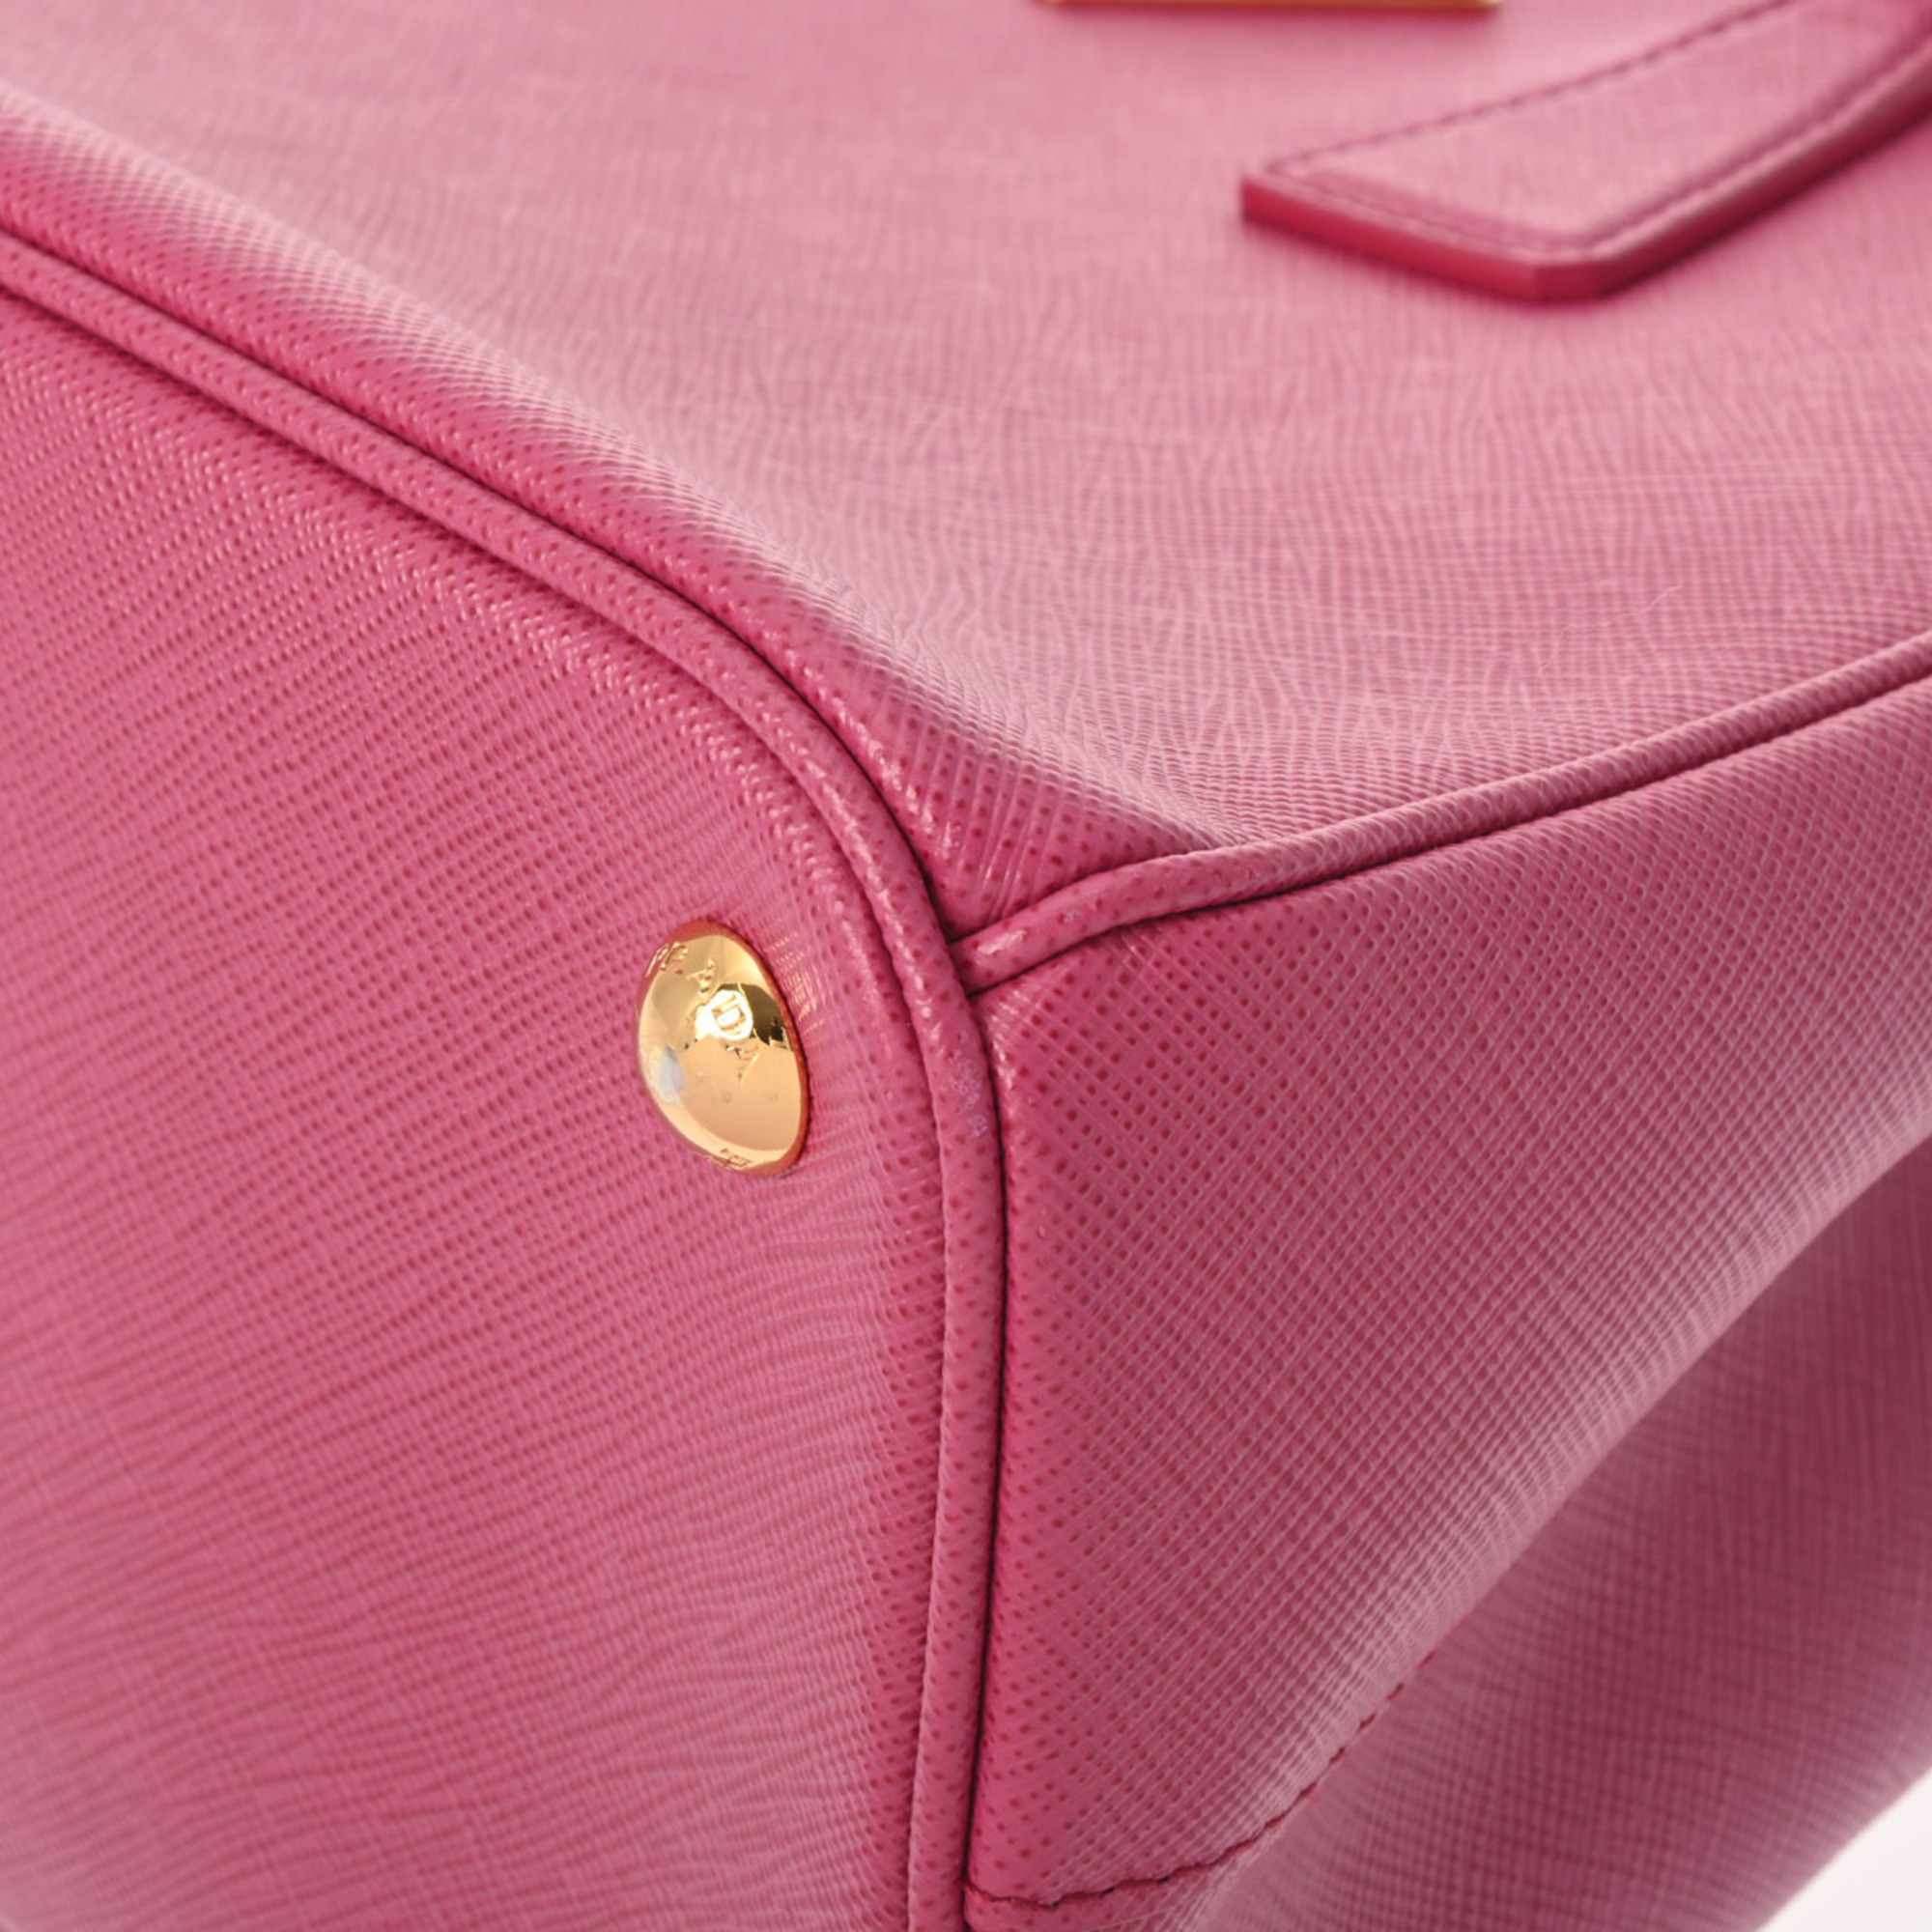 PRADA Prada Galleria Pink 1BA863 Women's Saffiano Bag